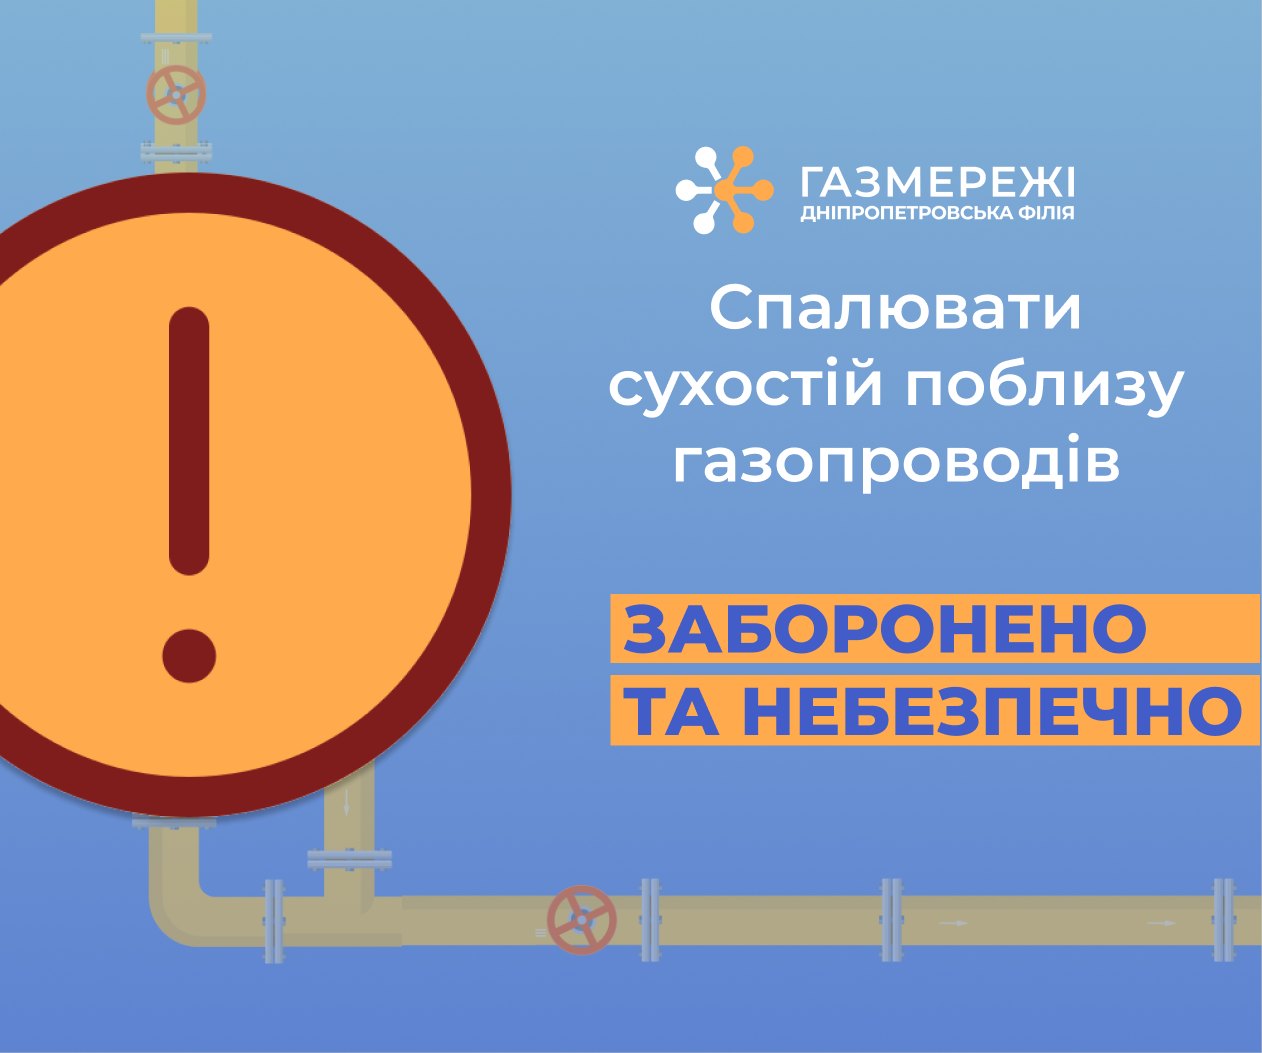 Дніпропетровська філія «Газмережі»: спалювання сухостою в охоронній зоні газопроводів протизаконно та небезпечно